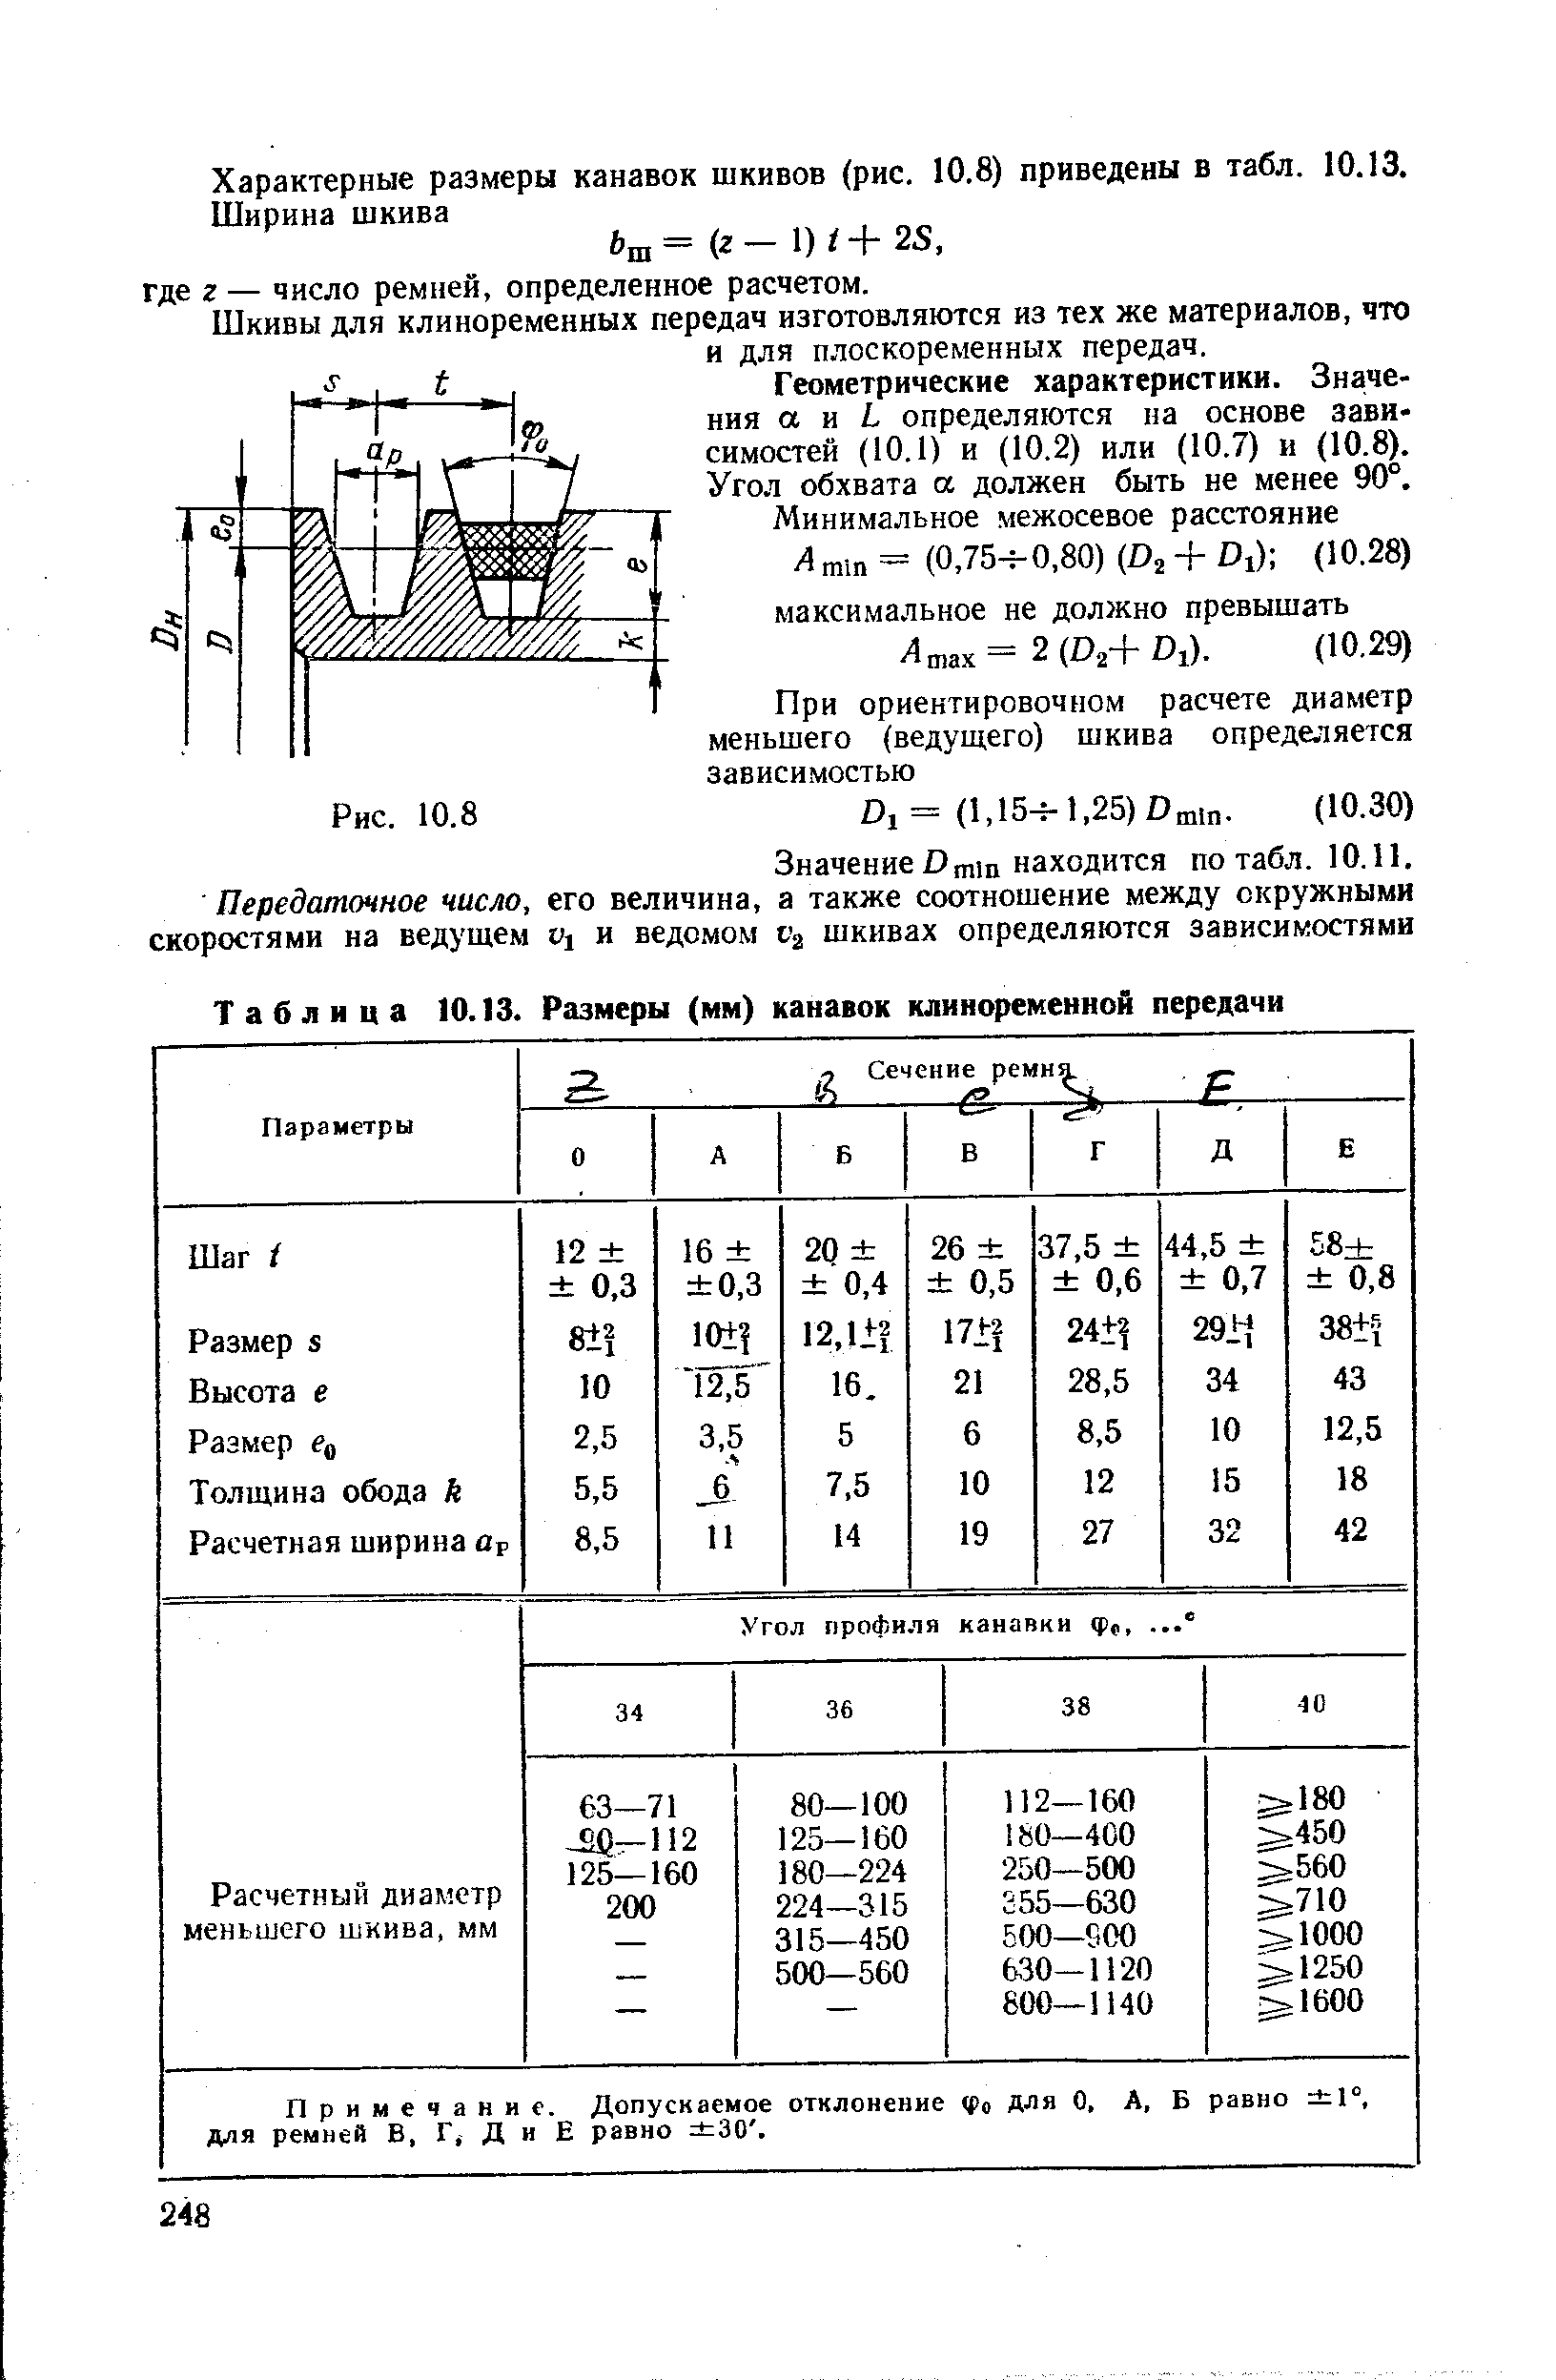 Таблица 10.13. Размеры (мм) канавок клиноременной передачи
